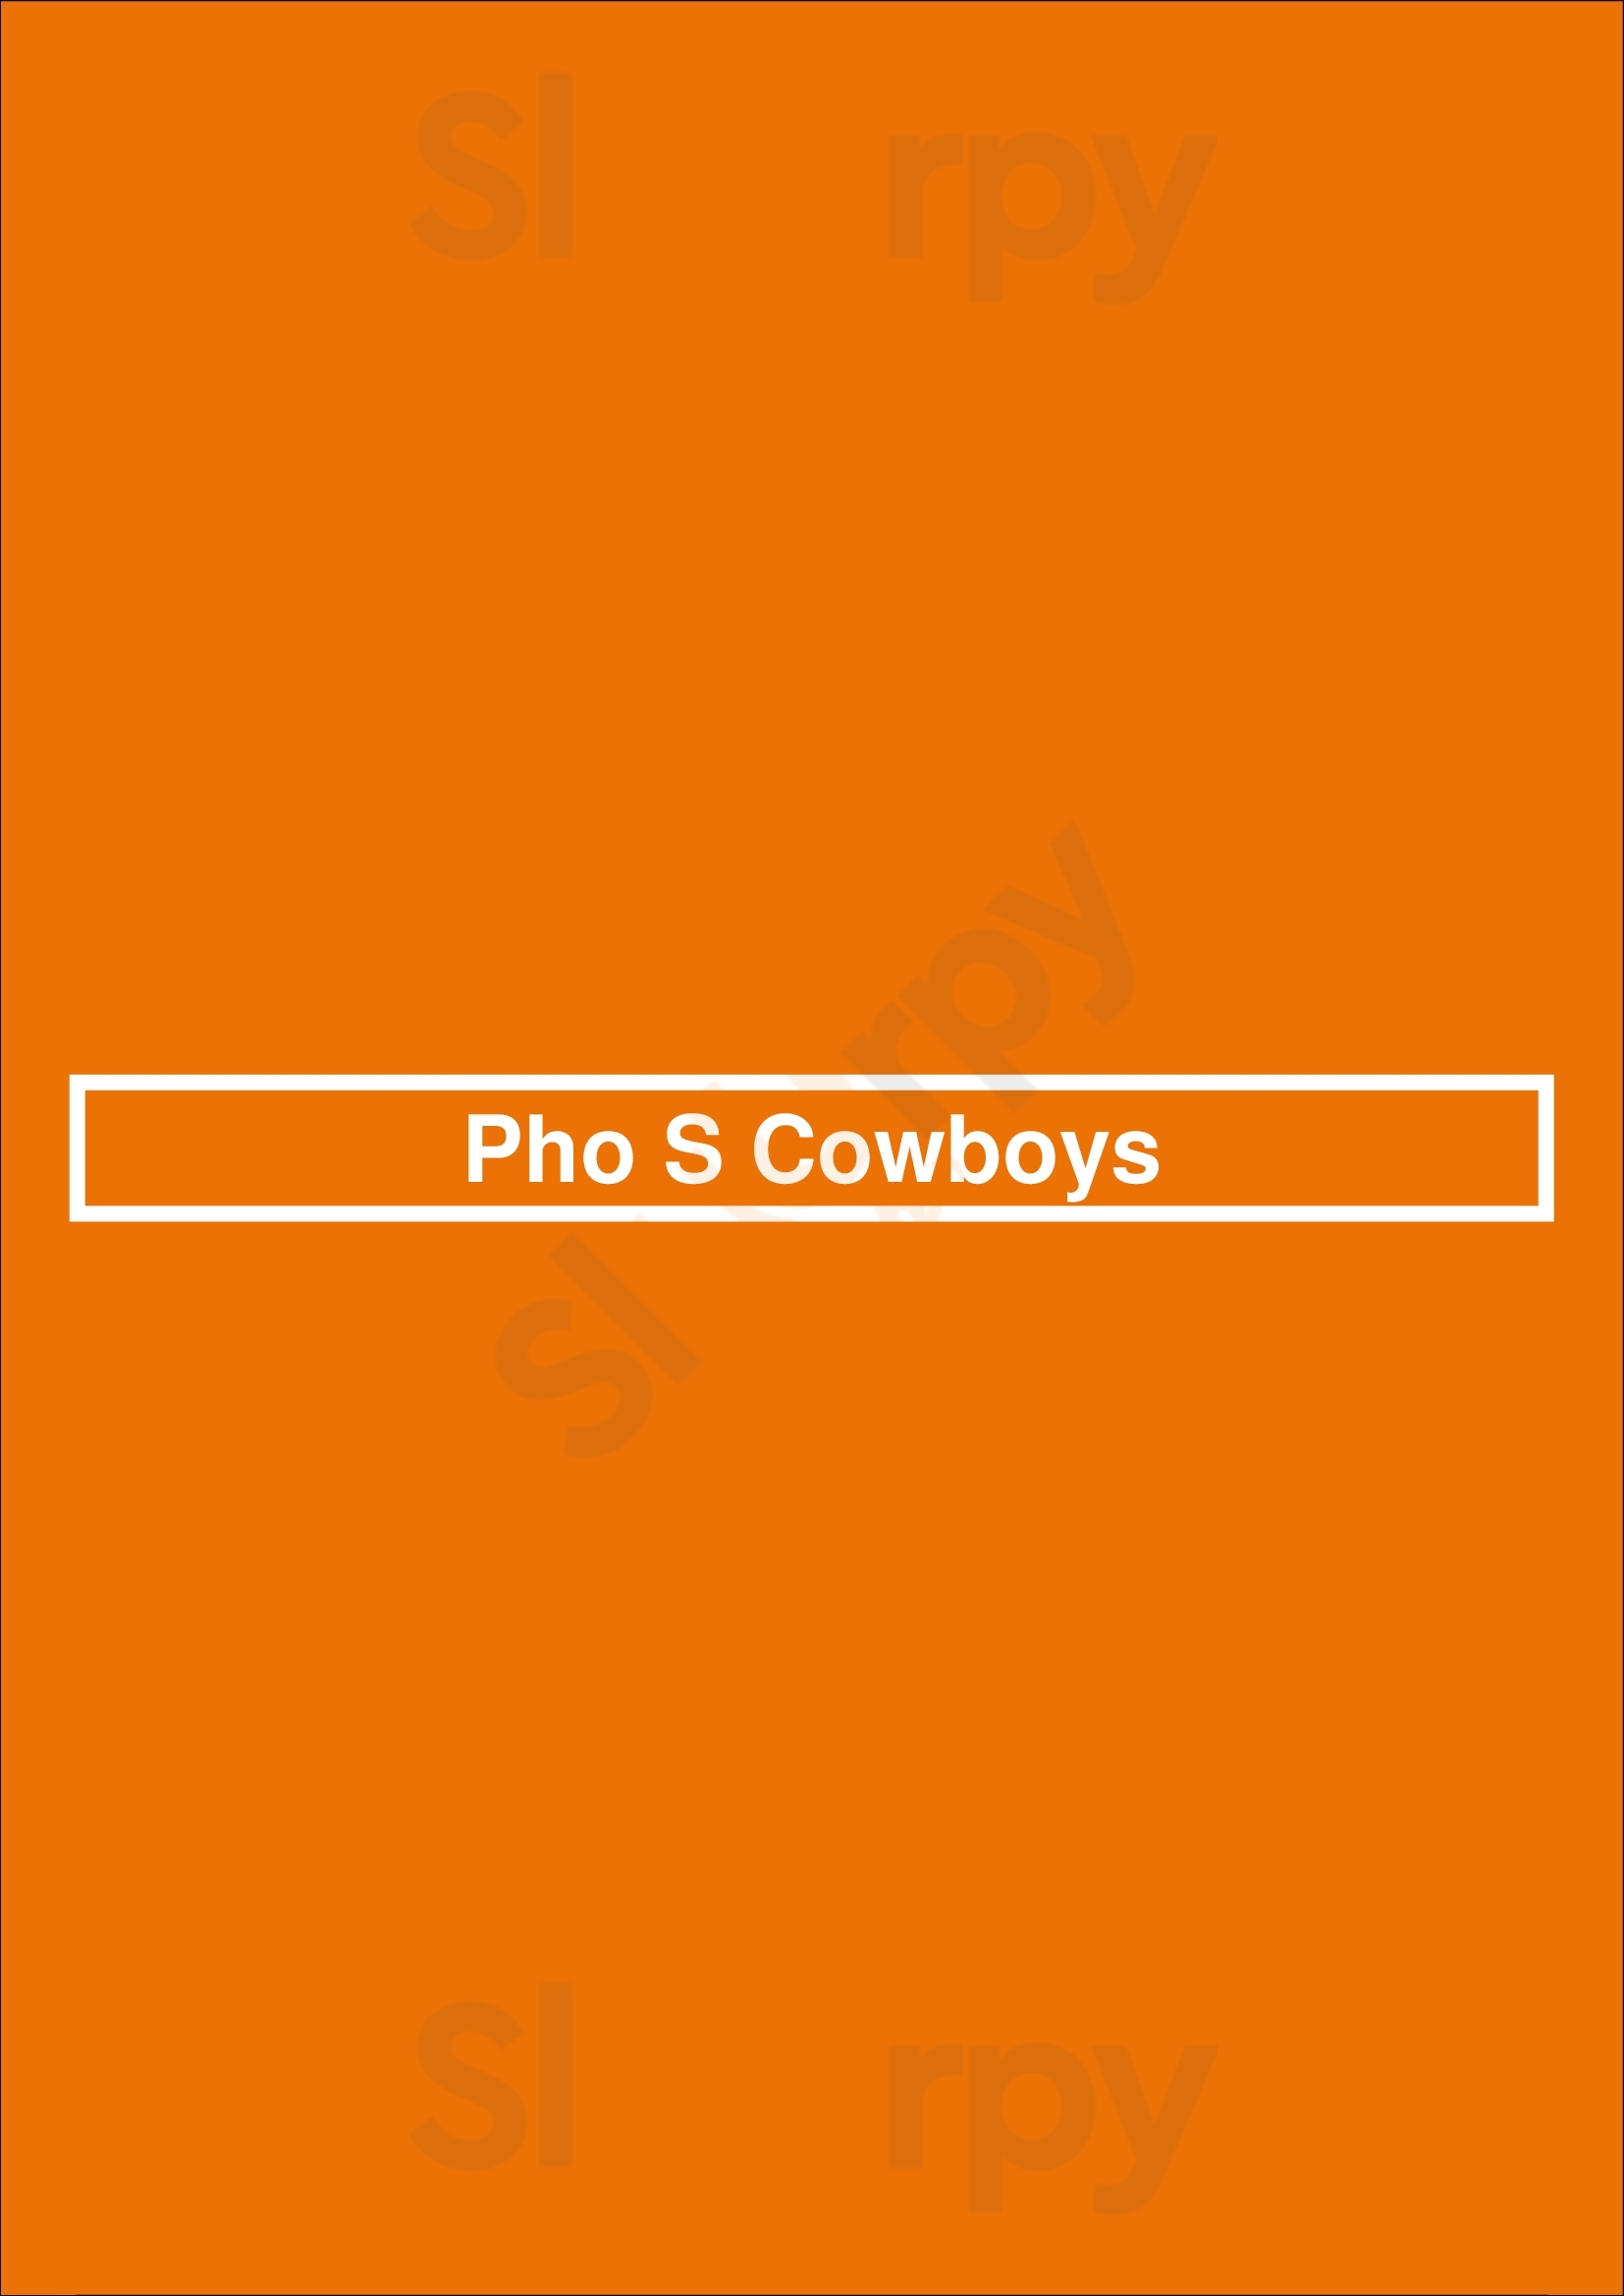 Pho S Cowboys Plano Menu - 1